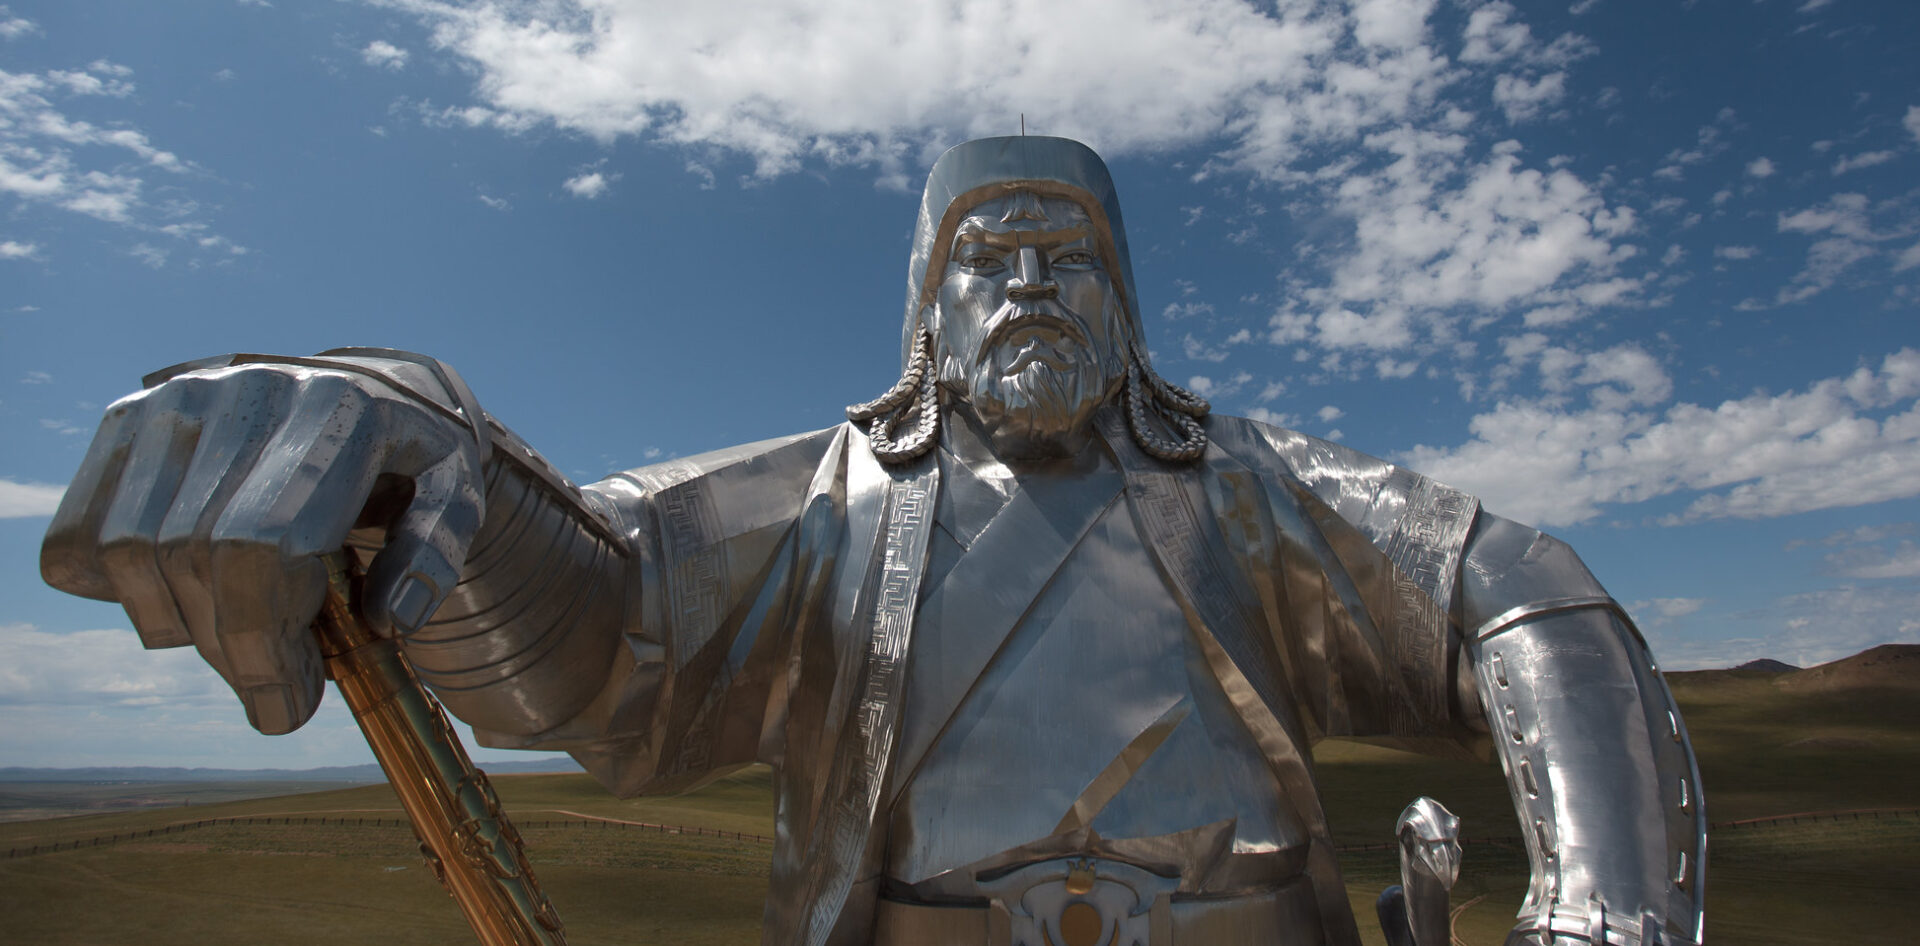 La figure du conquérant Gengis Khan est quasi divinisée en Mongolie | © Ludovic Hirlimann/Flickr/CC BY 2.0